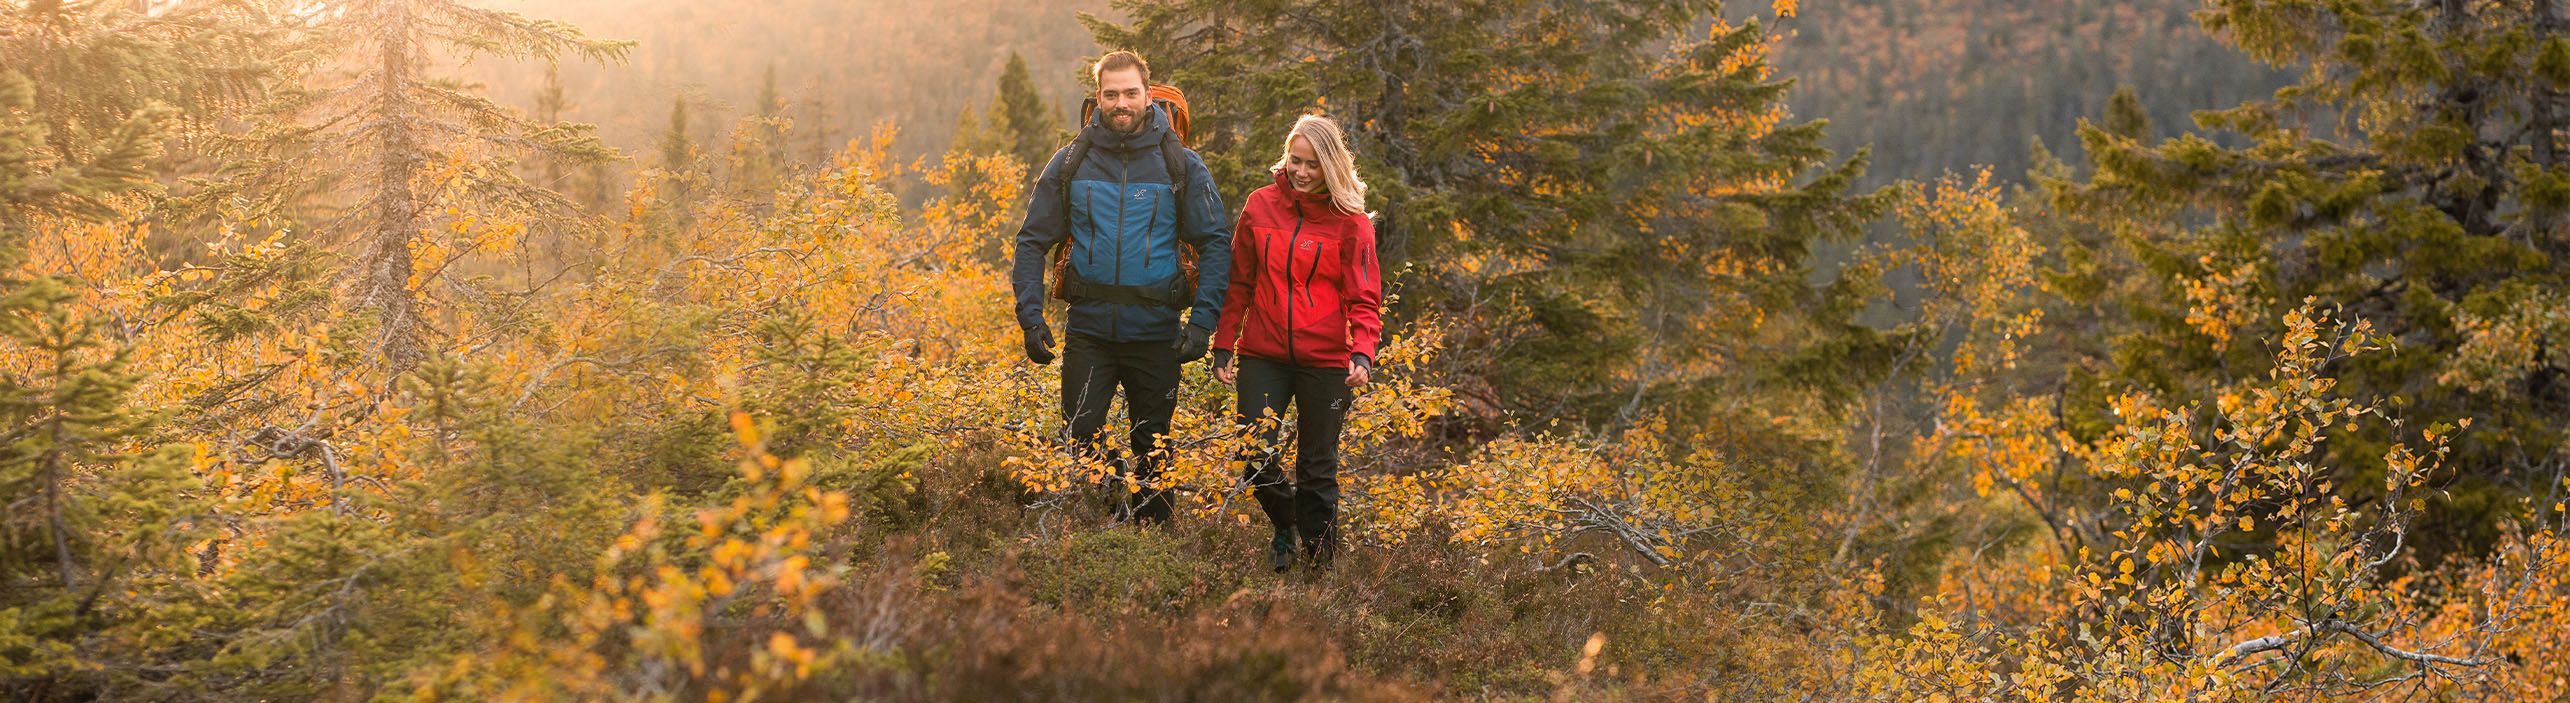 man och kvinna vandrar på hösten.jpeg